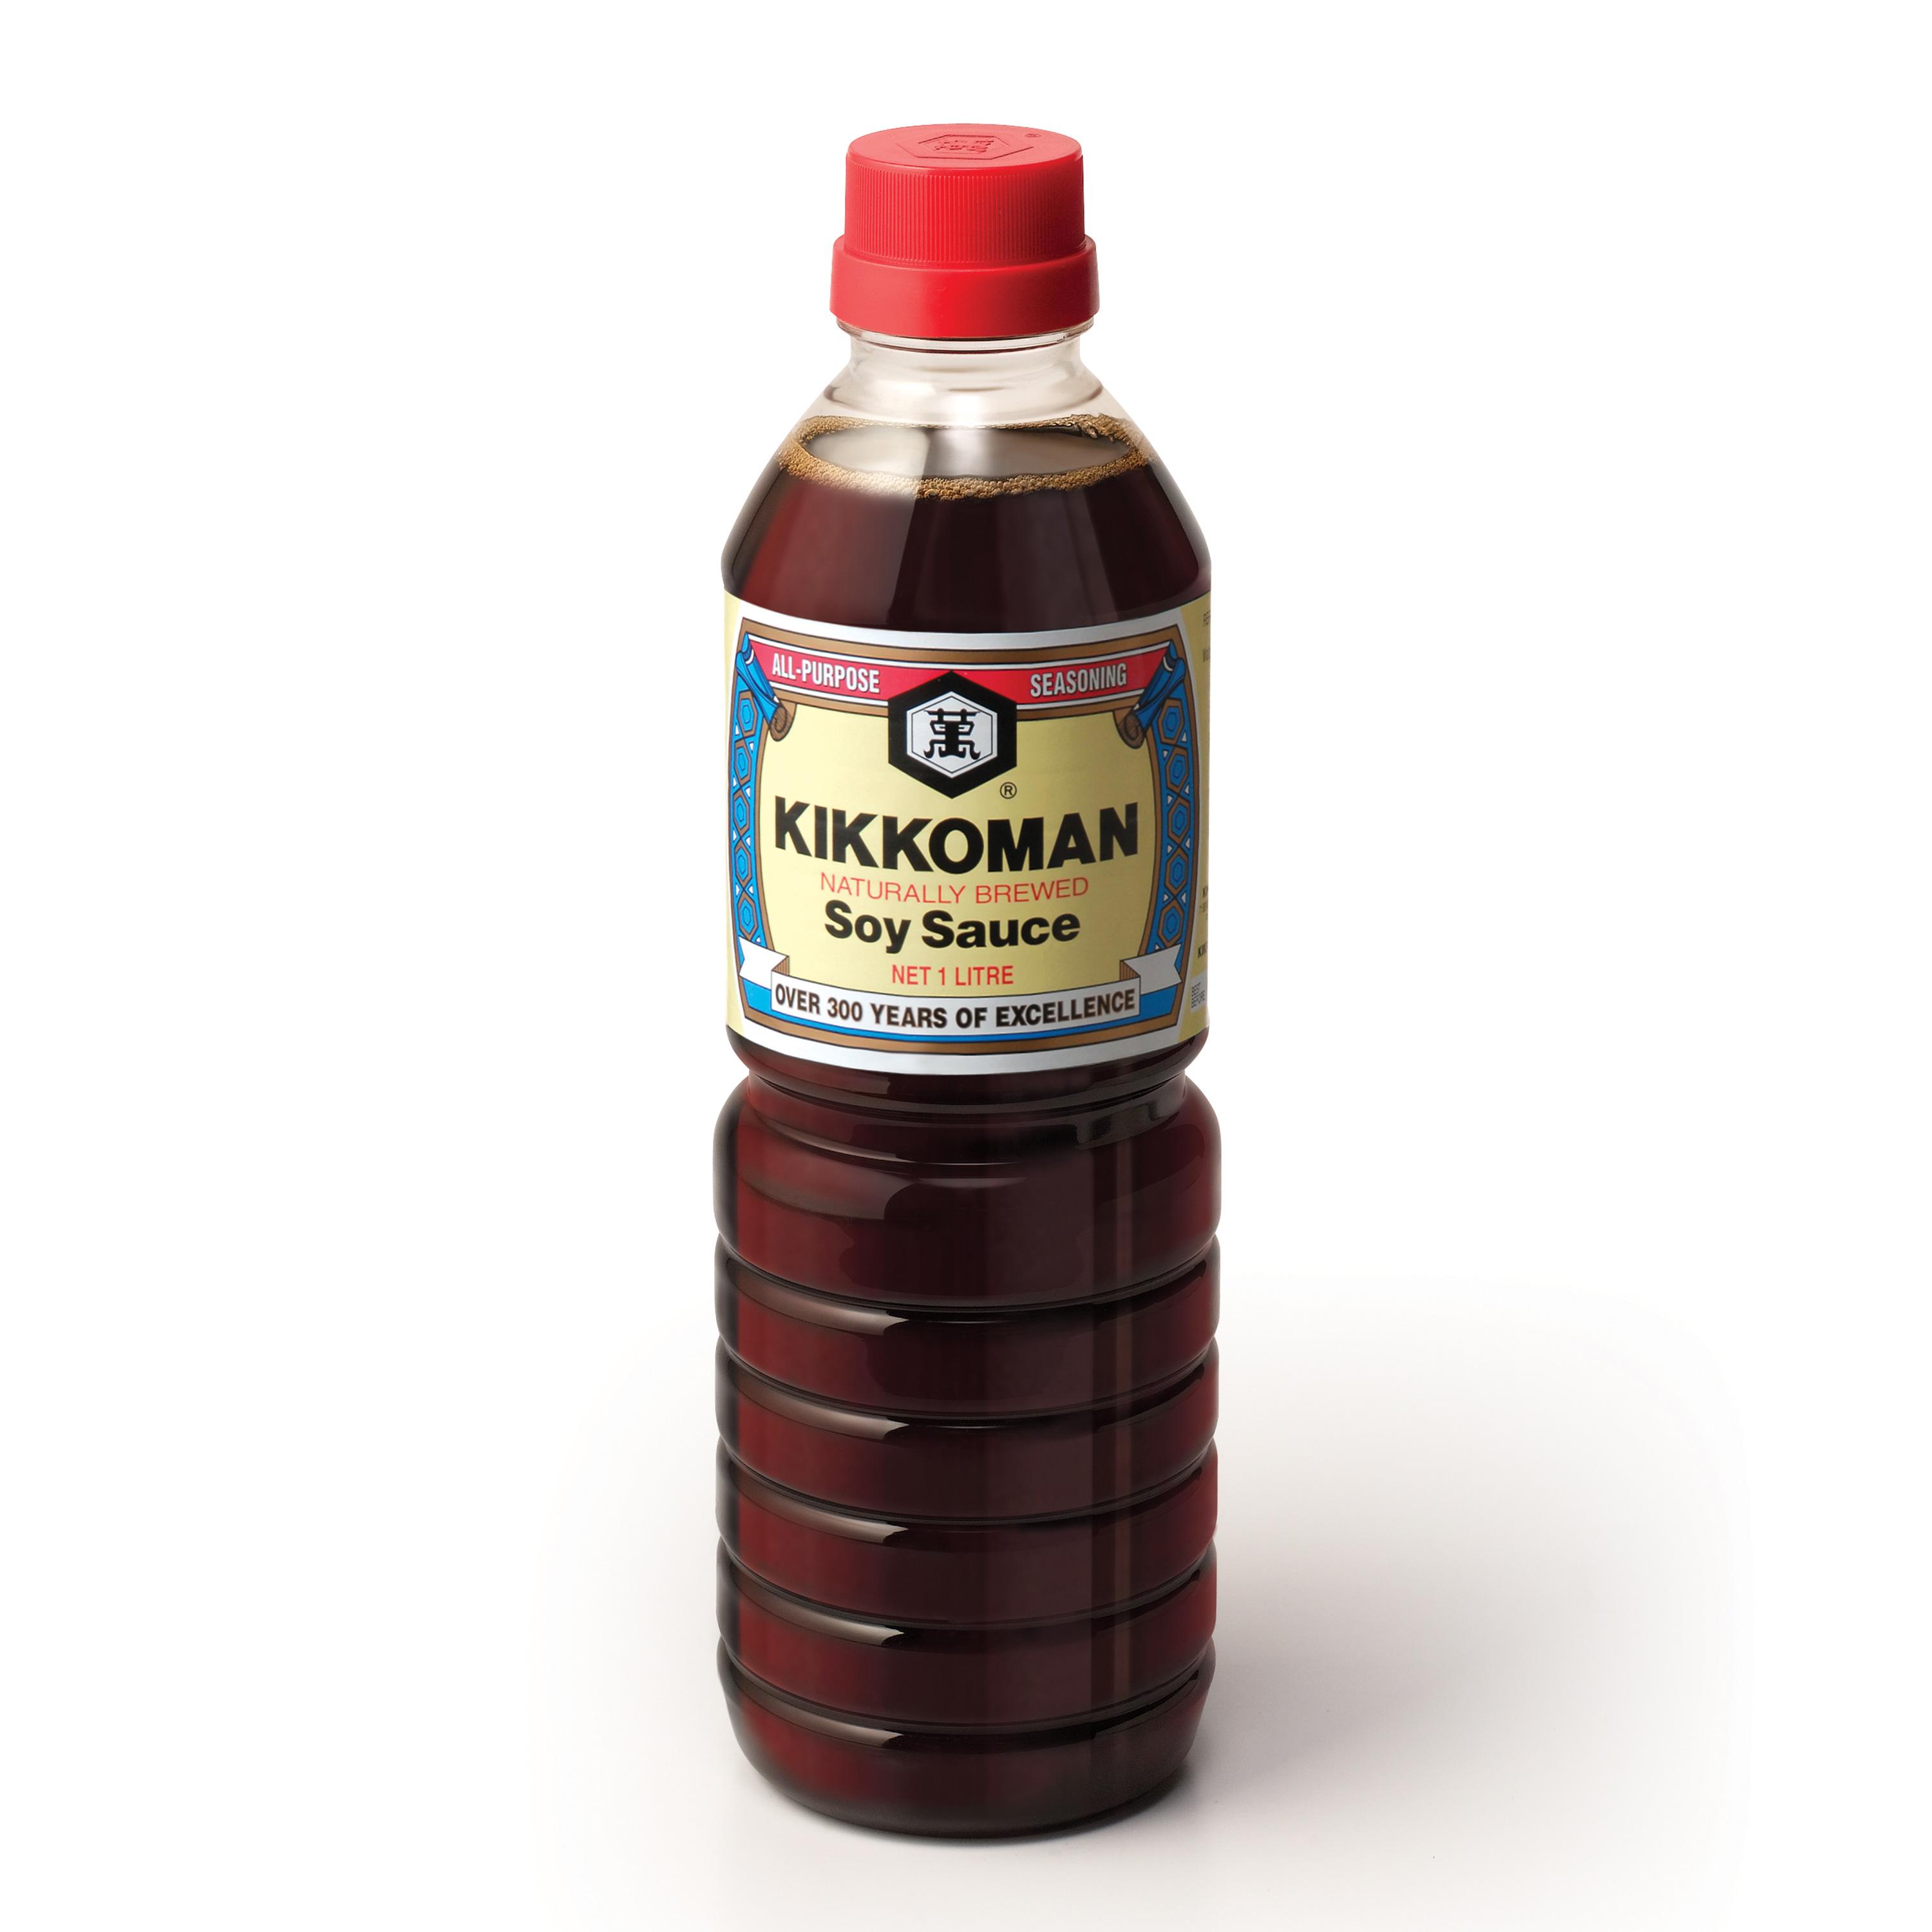 37-kikkoman-red-label-soy-sauce-labels-2021